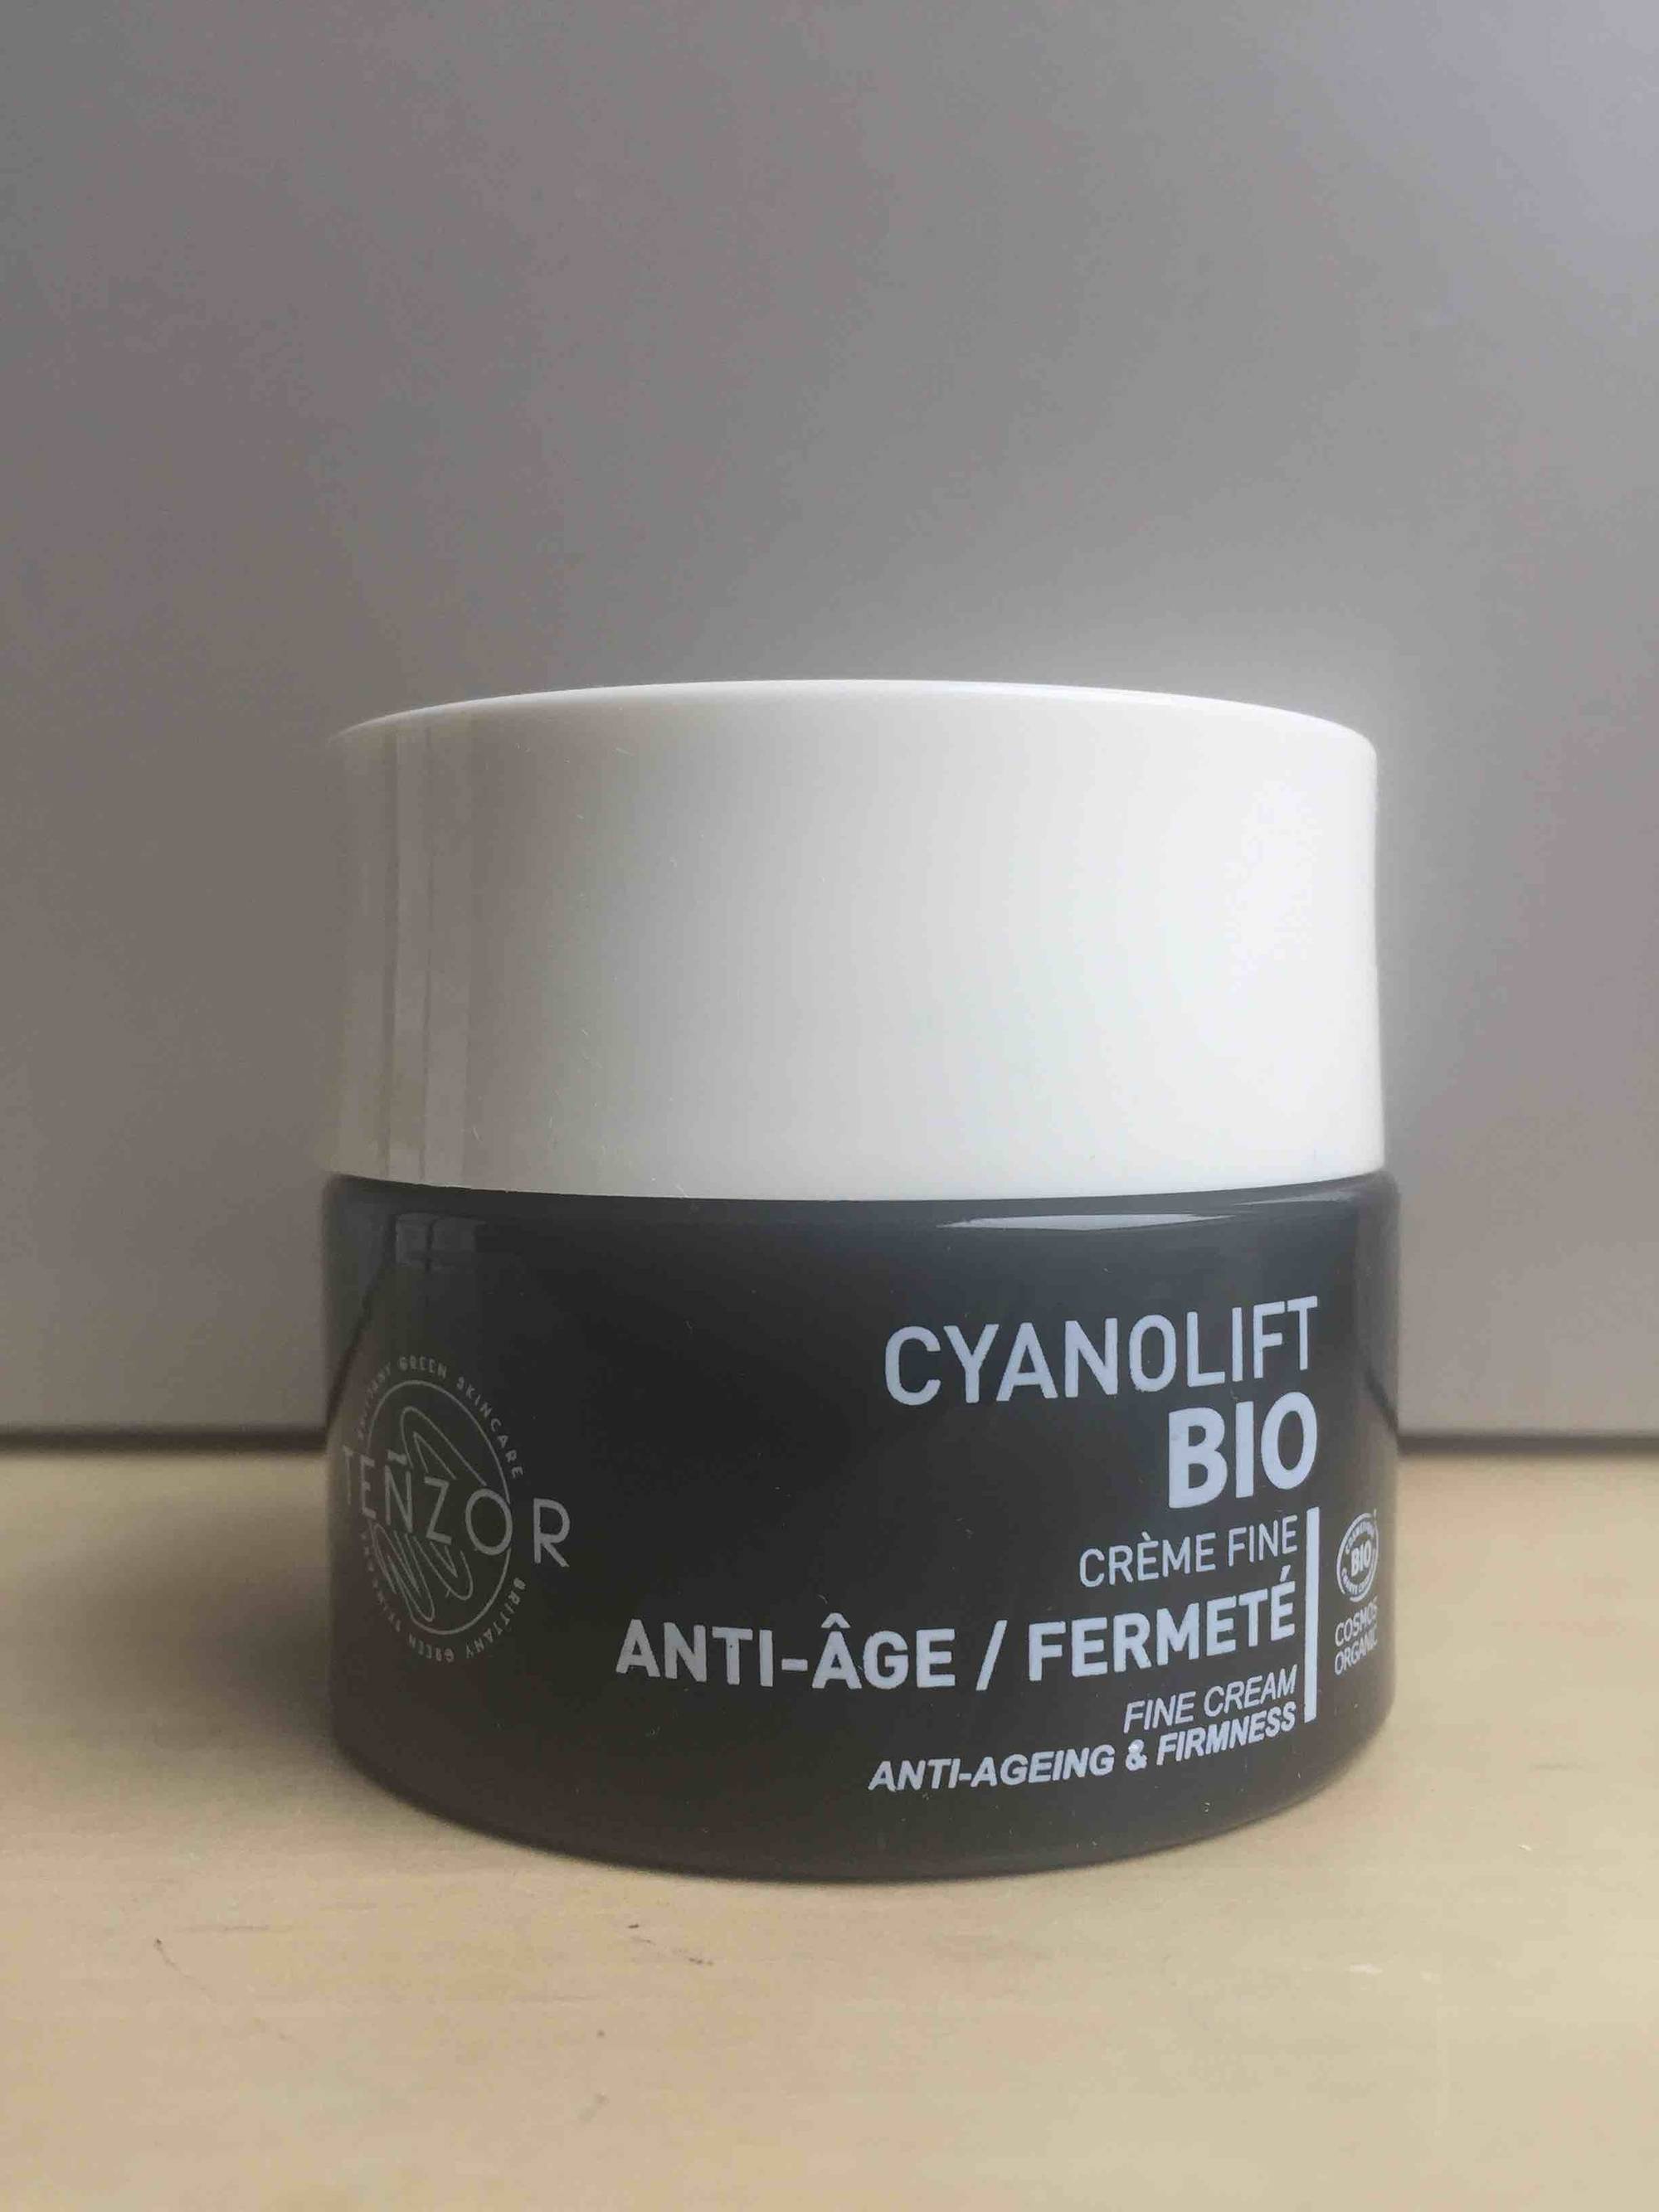 TENZOR - Cyanolift Bio - Crème fine Anti-âge fermeté